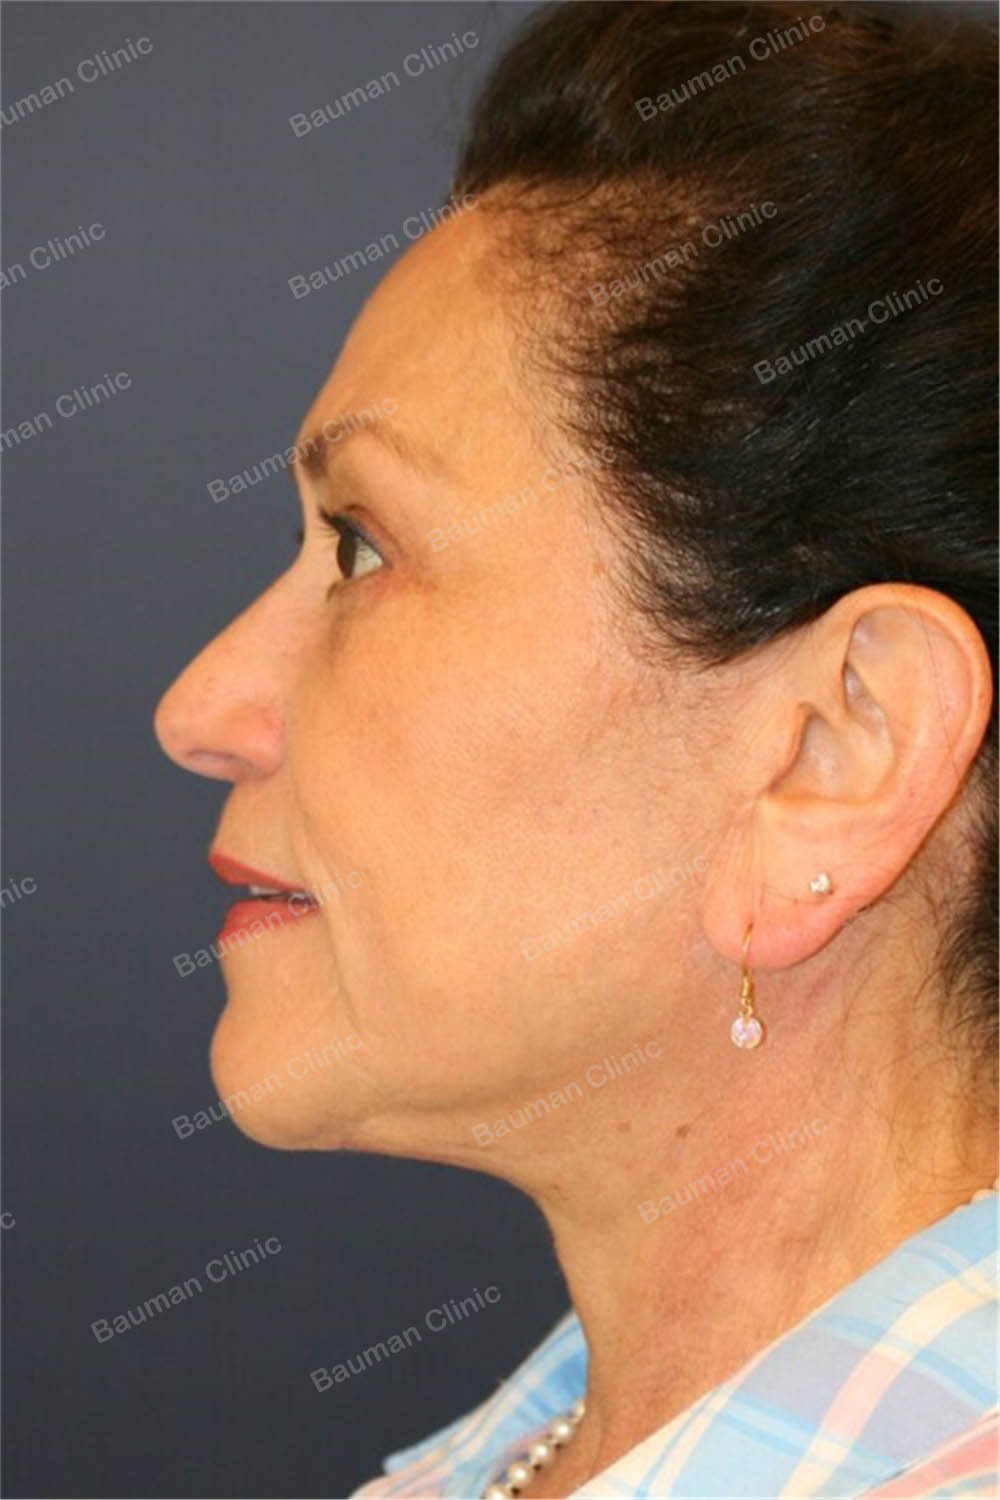 Căng da mặt kết hợp cắt mí trên dưới, nữ 65 tuổi người Mỹ - case 3